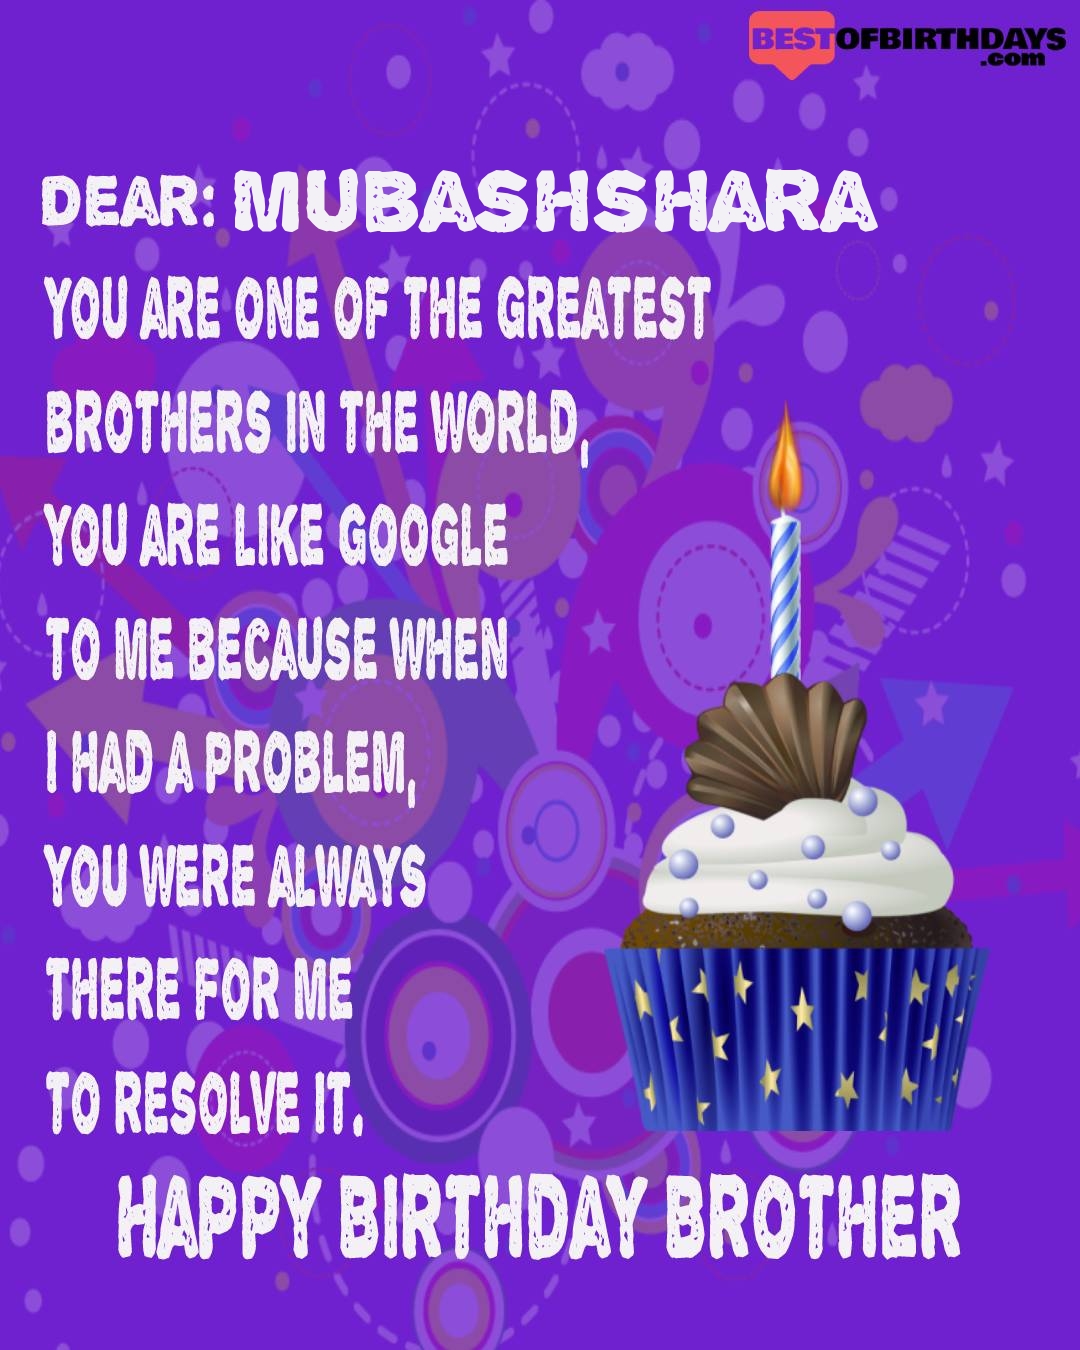 Happy birthday mubashshara bhai brother bro